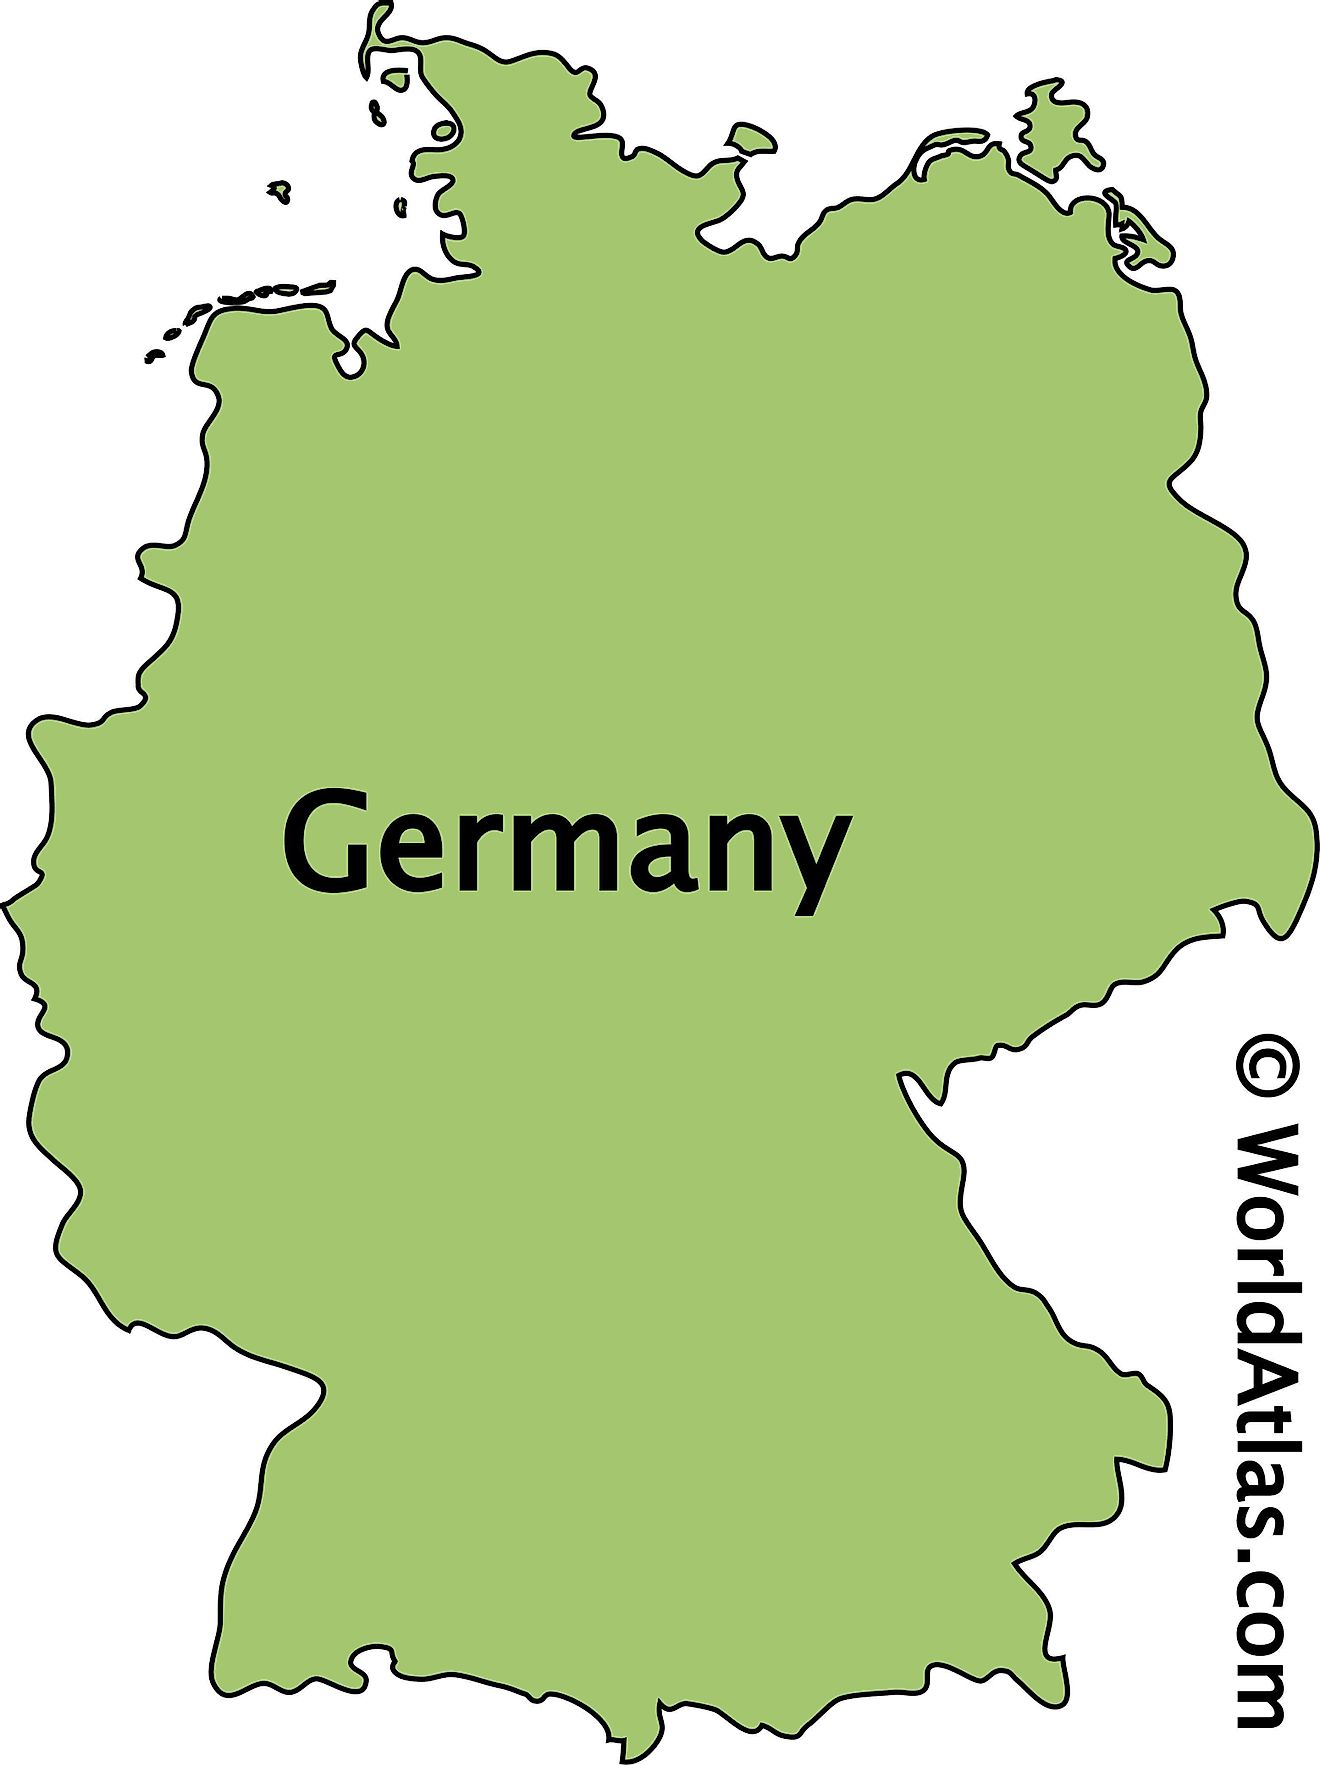 Mapa de contorno de Alemania